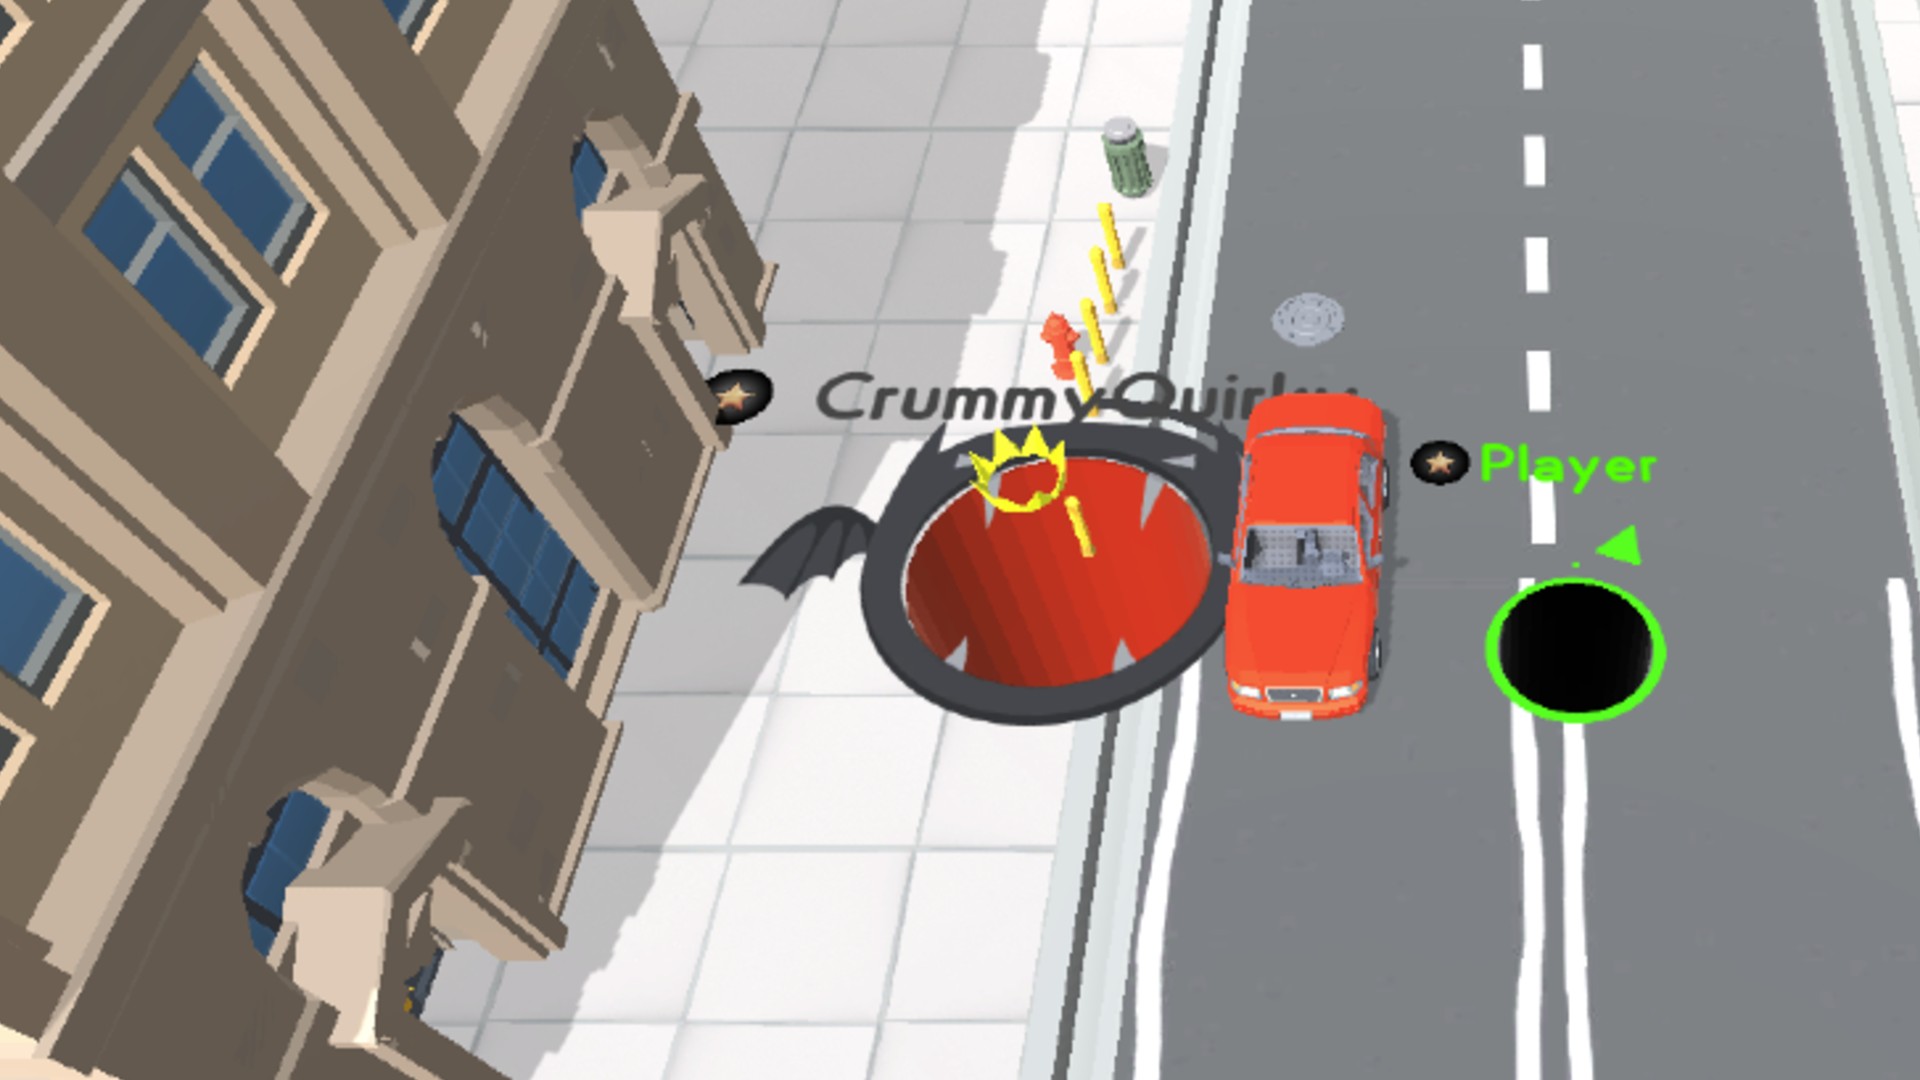 بازی های آنلاین: Hole.io. تصویر یک سوراخ غول پیکر را نشان می دهد که به سمت یک ماشین حرکت می کند و برای خوردن آن آماده می شود